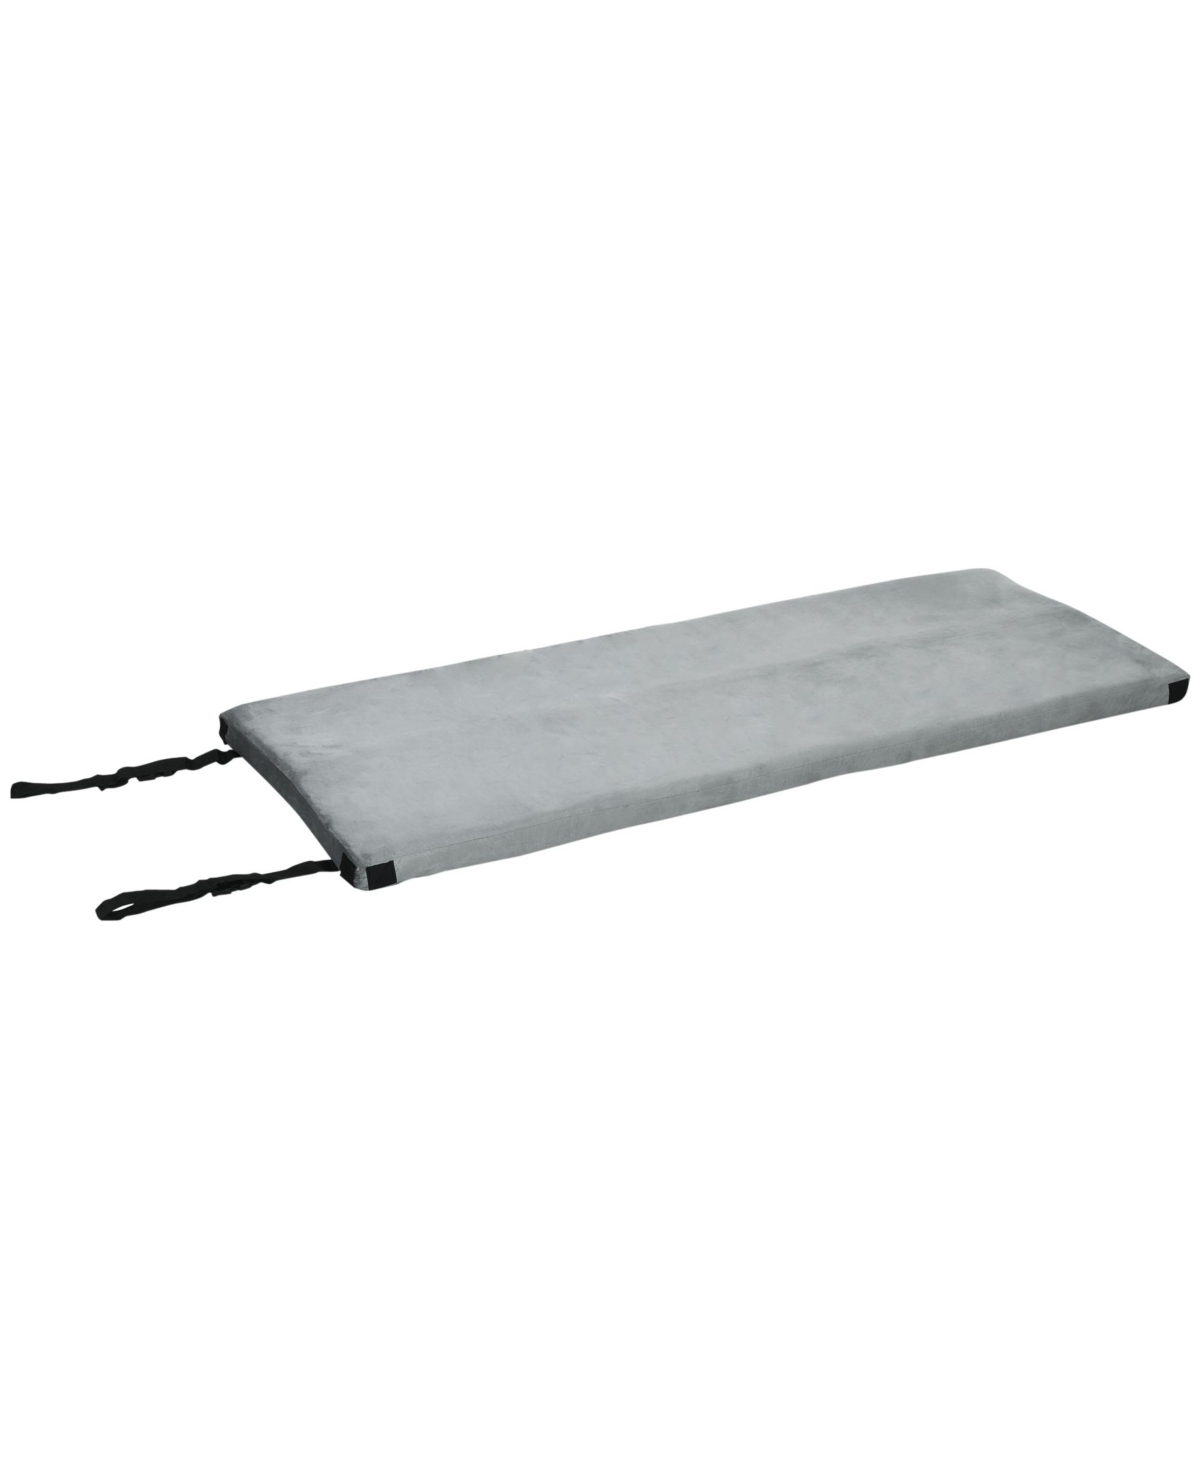 Camping Mattress Pad w/ Dual-Foam Memory Foam Sleeping Pad, 74.7" - Gray